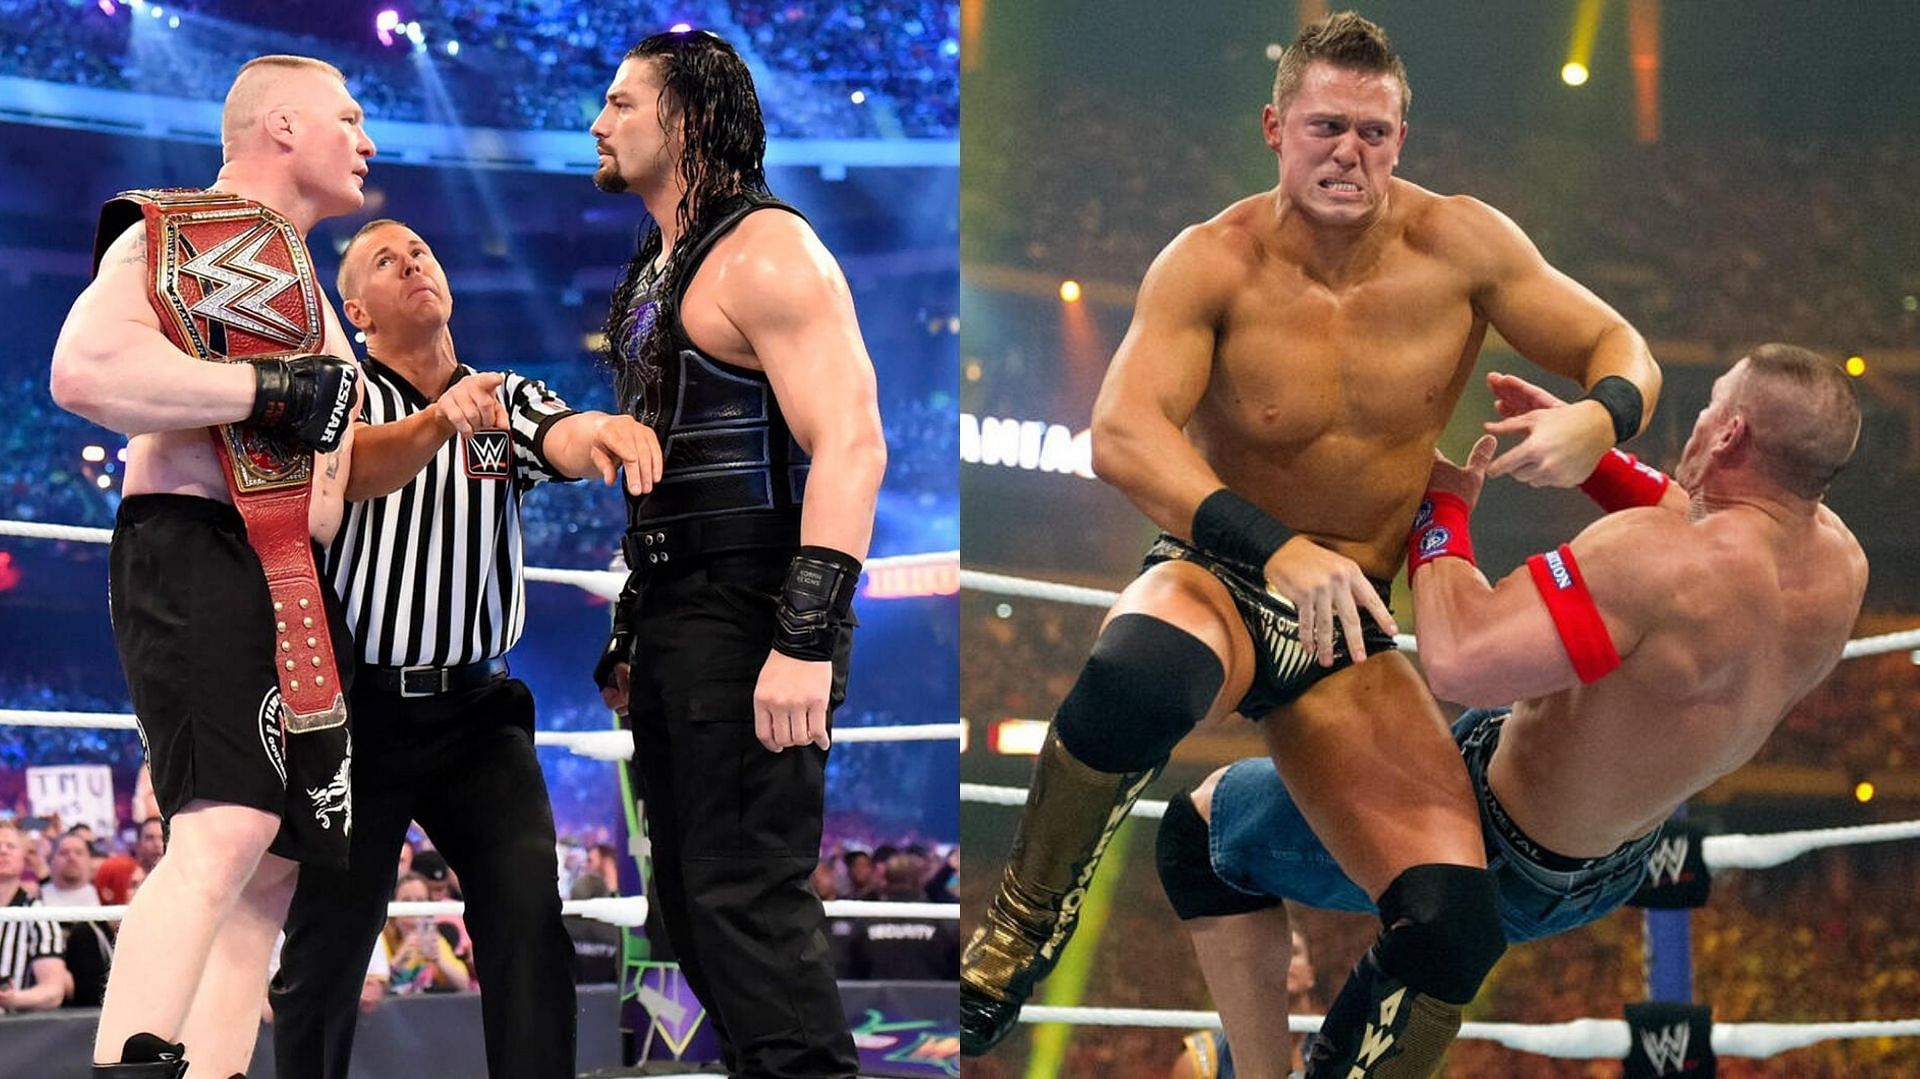 Brock Lesnar, Roman Reigns, The Miz and John Cena